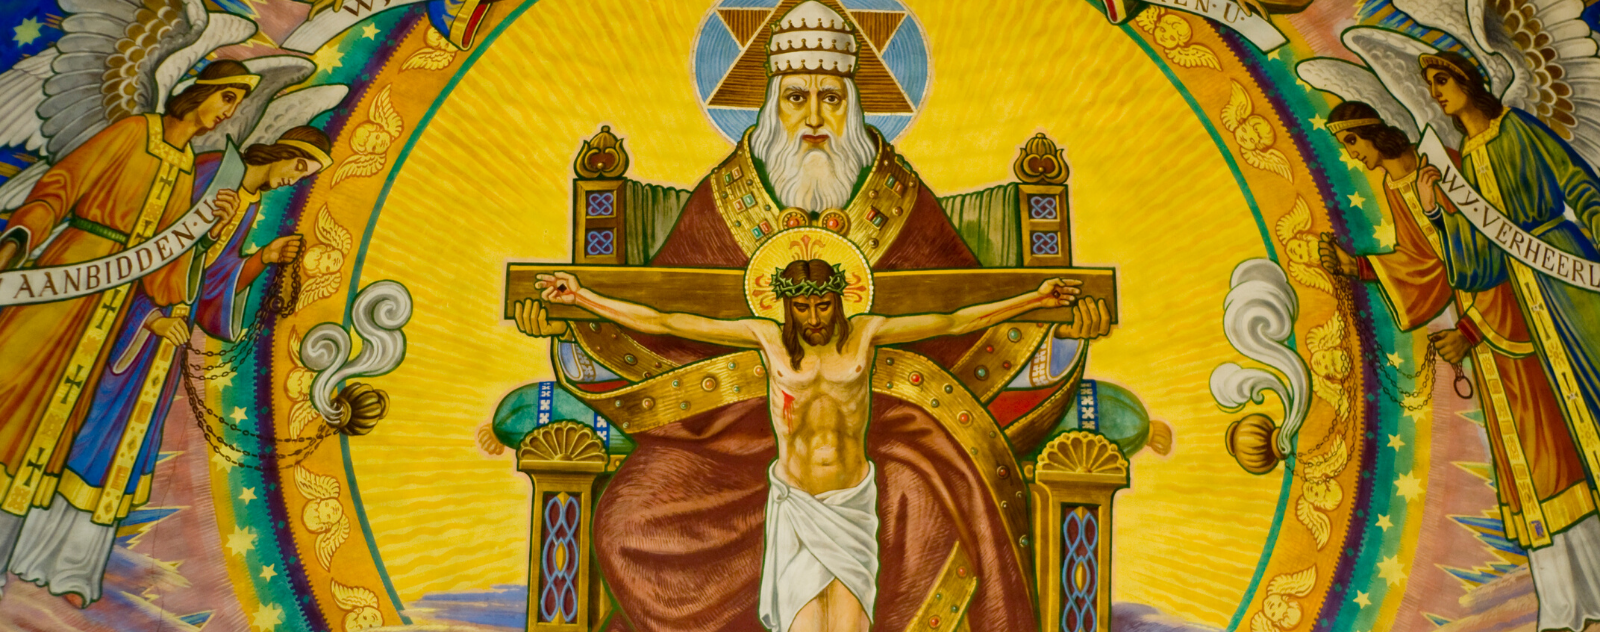 jesus art crucifixion